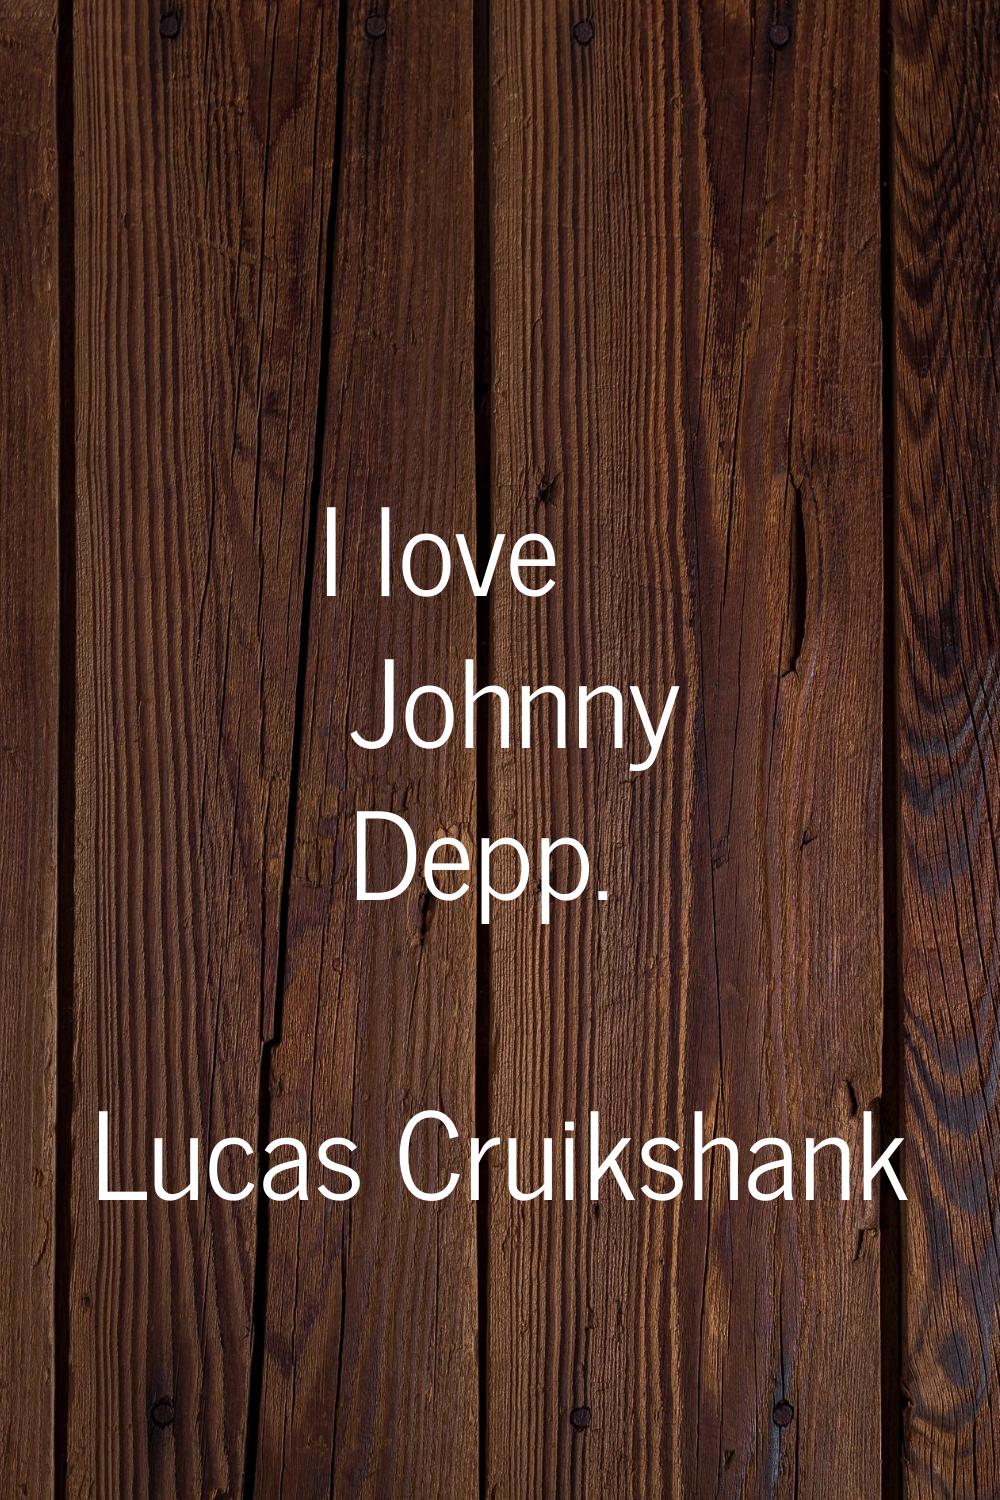 I love Johnny Depp.